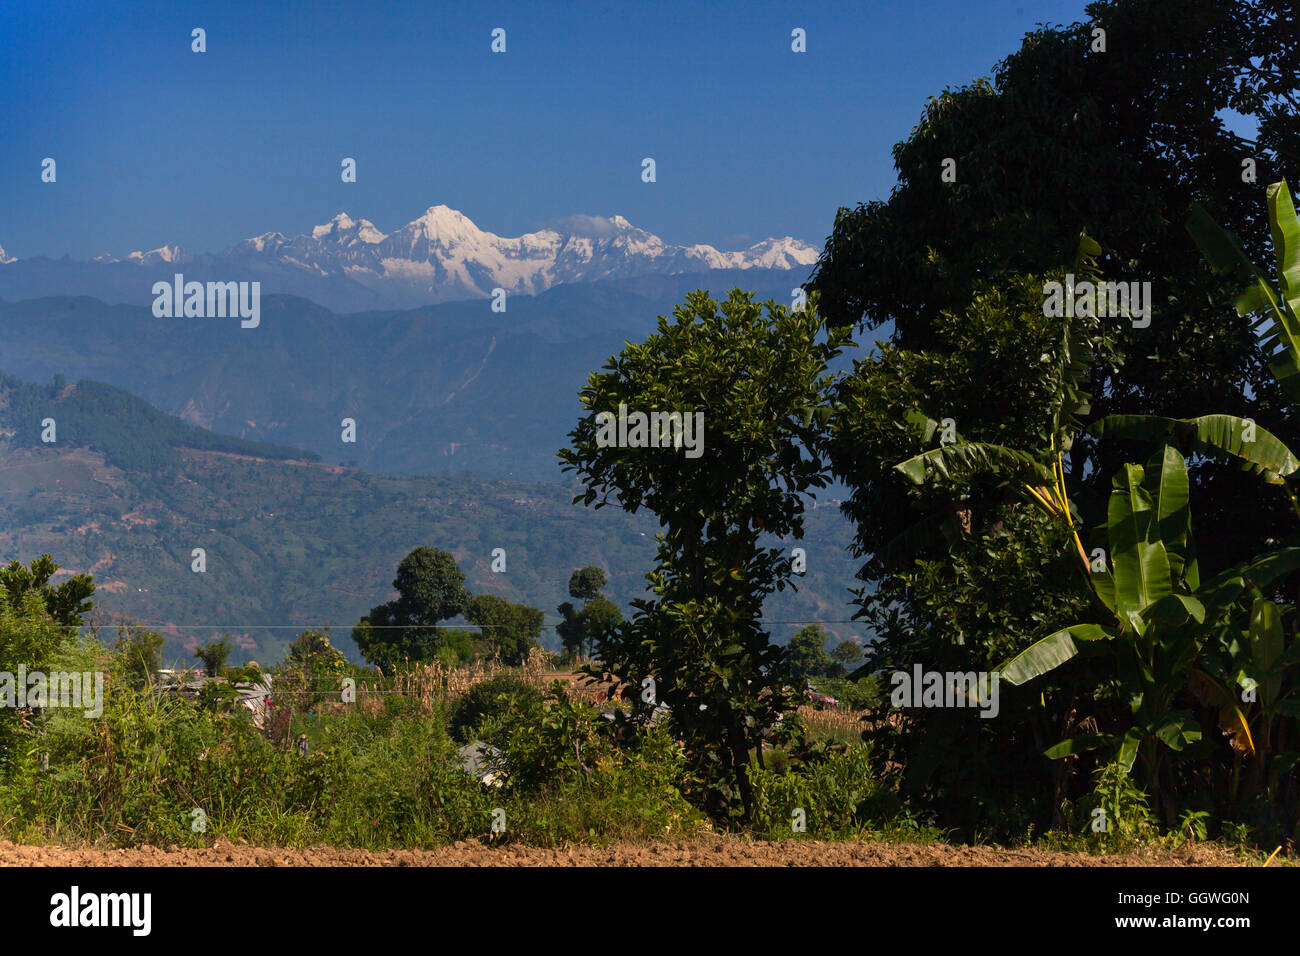 HIMALAYAN VIEW from GOGANPANI VILLAGE - NEPAL Stock Photo